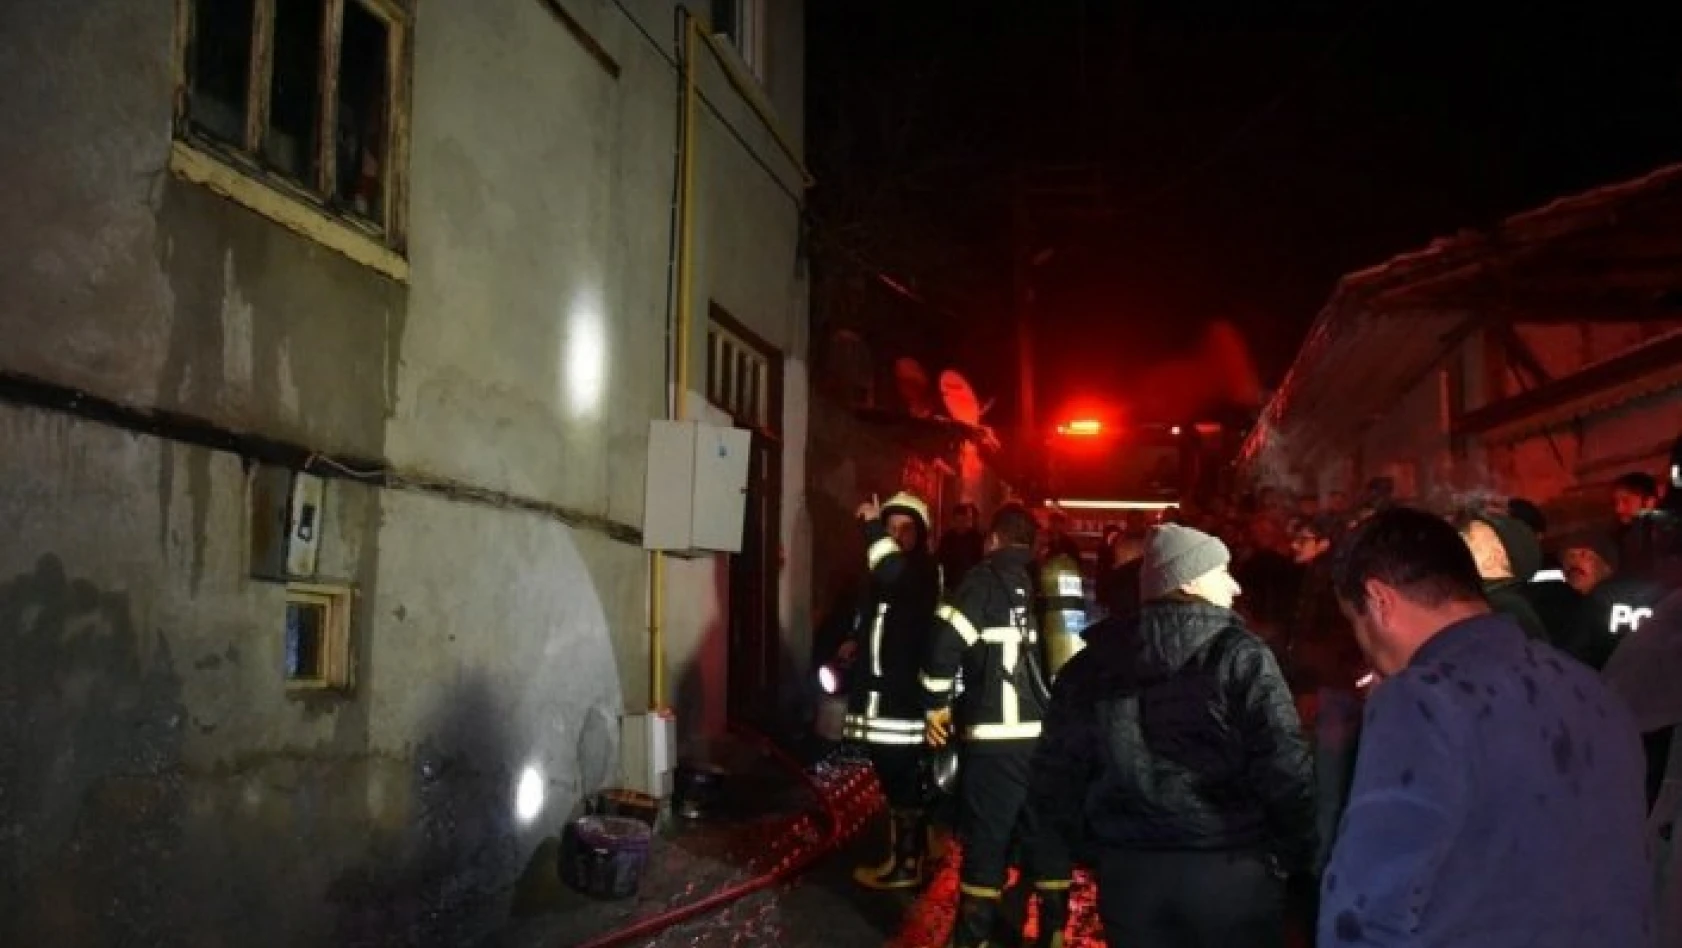 Tosya'da 10 kişinin yaşadığı evde yangın